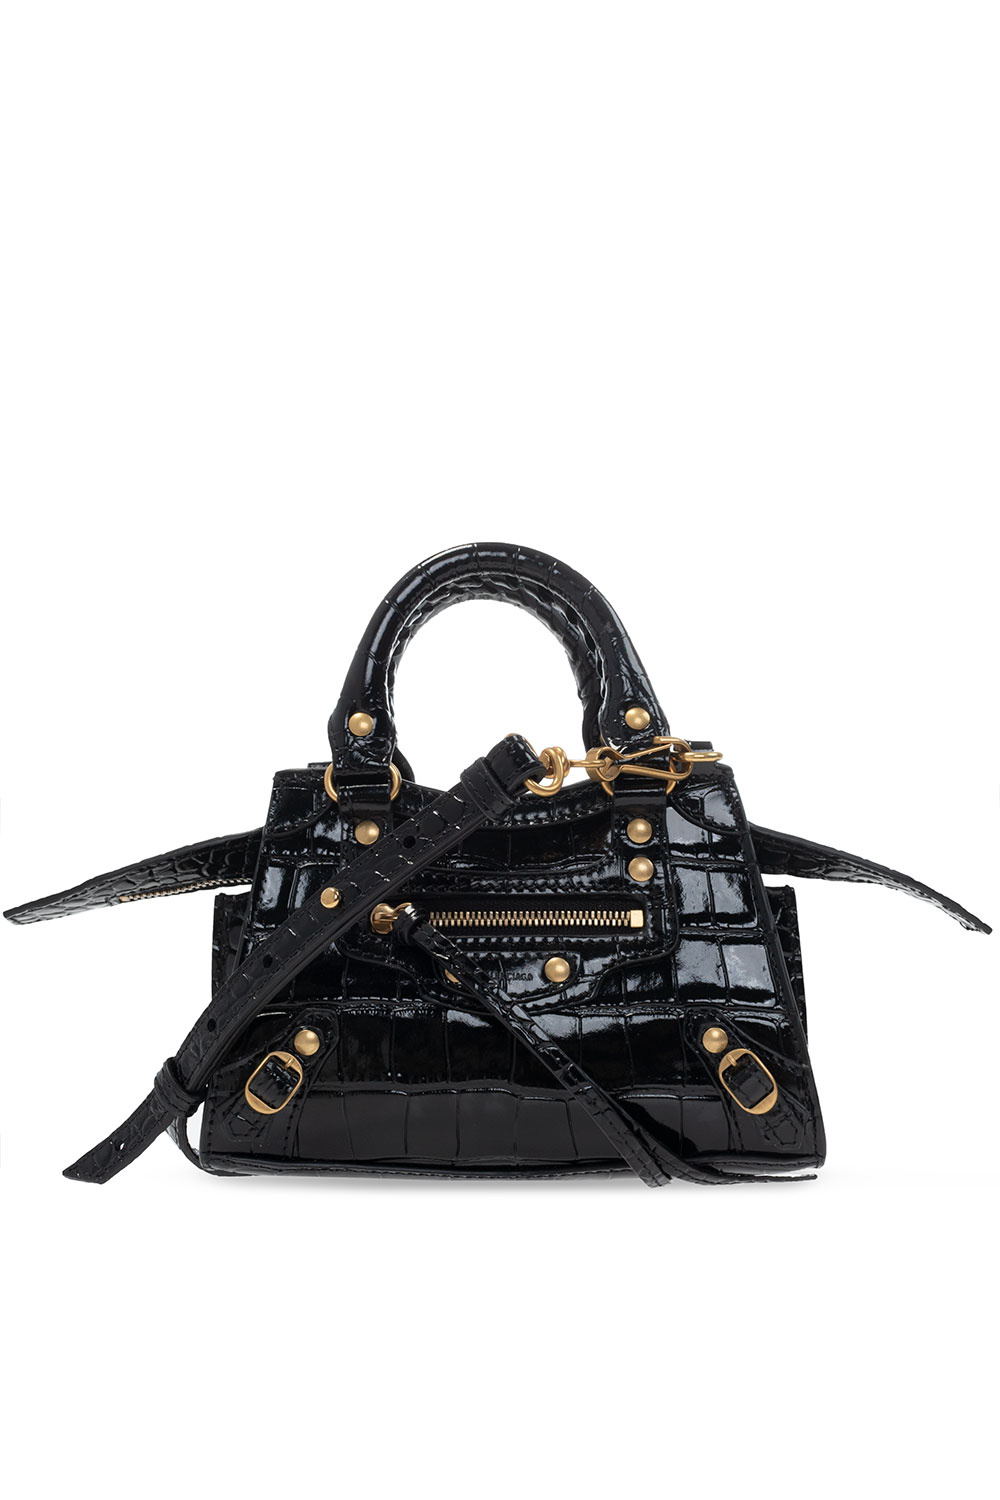 Balenciaga 'Neo Classic City Nano' bag | Women's Bags | IetpShops